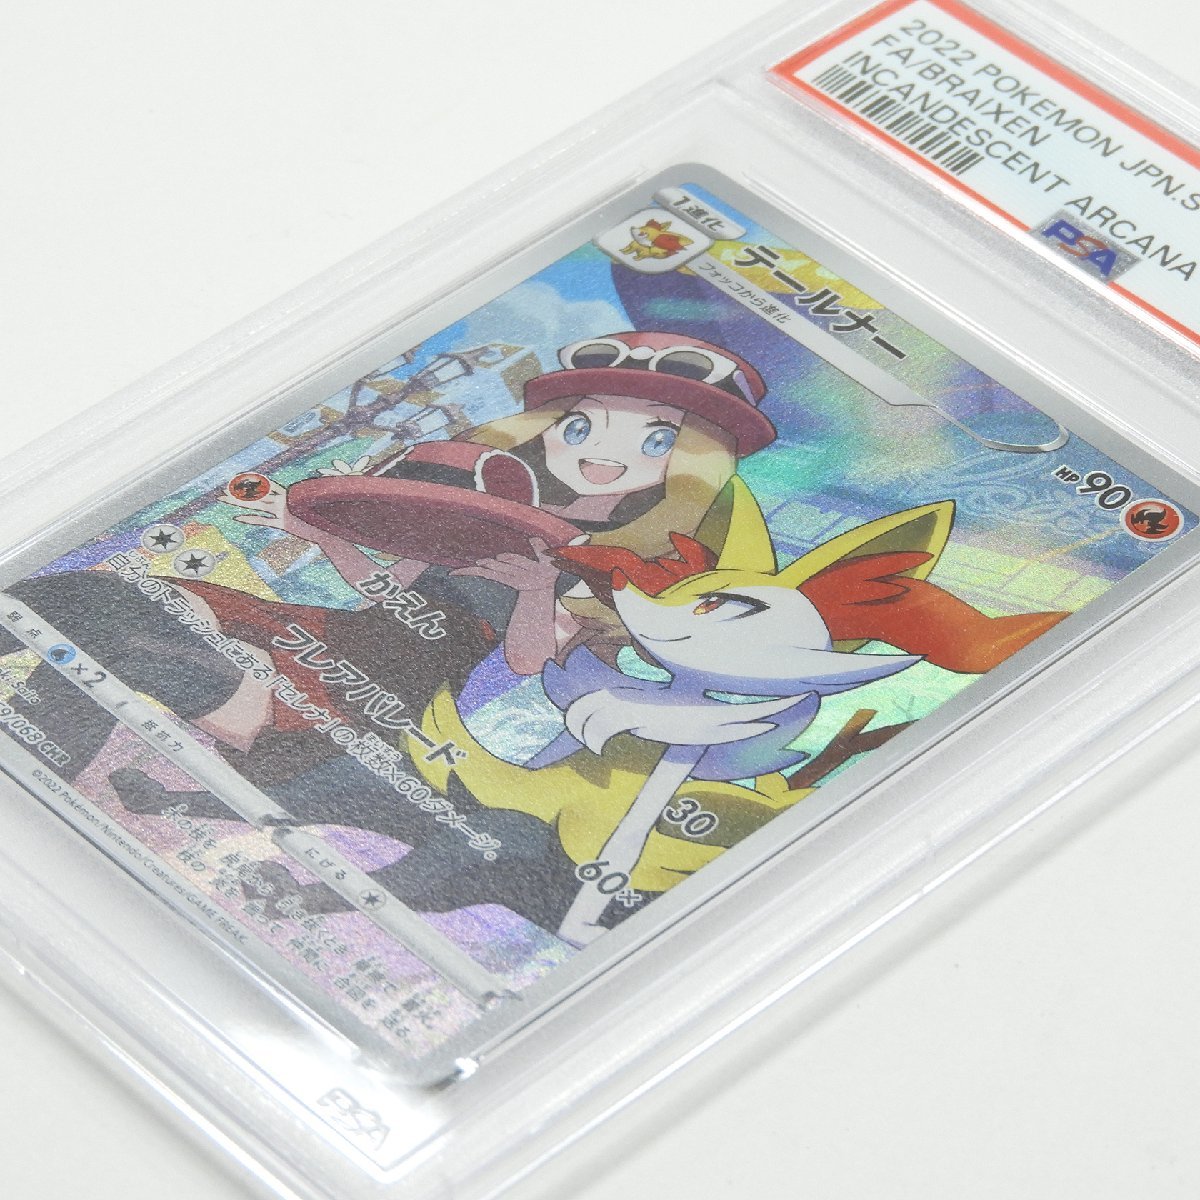 PSA10 ポケカ テールナー CHR S11a #17020 送料360円 趣味 コレクション ポケモンカードの画像5